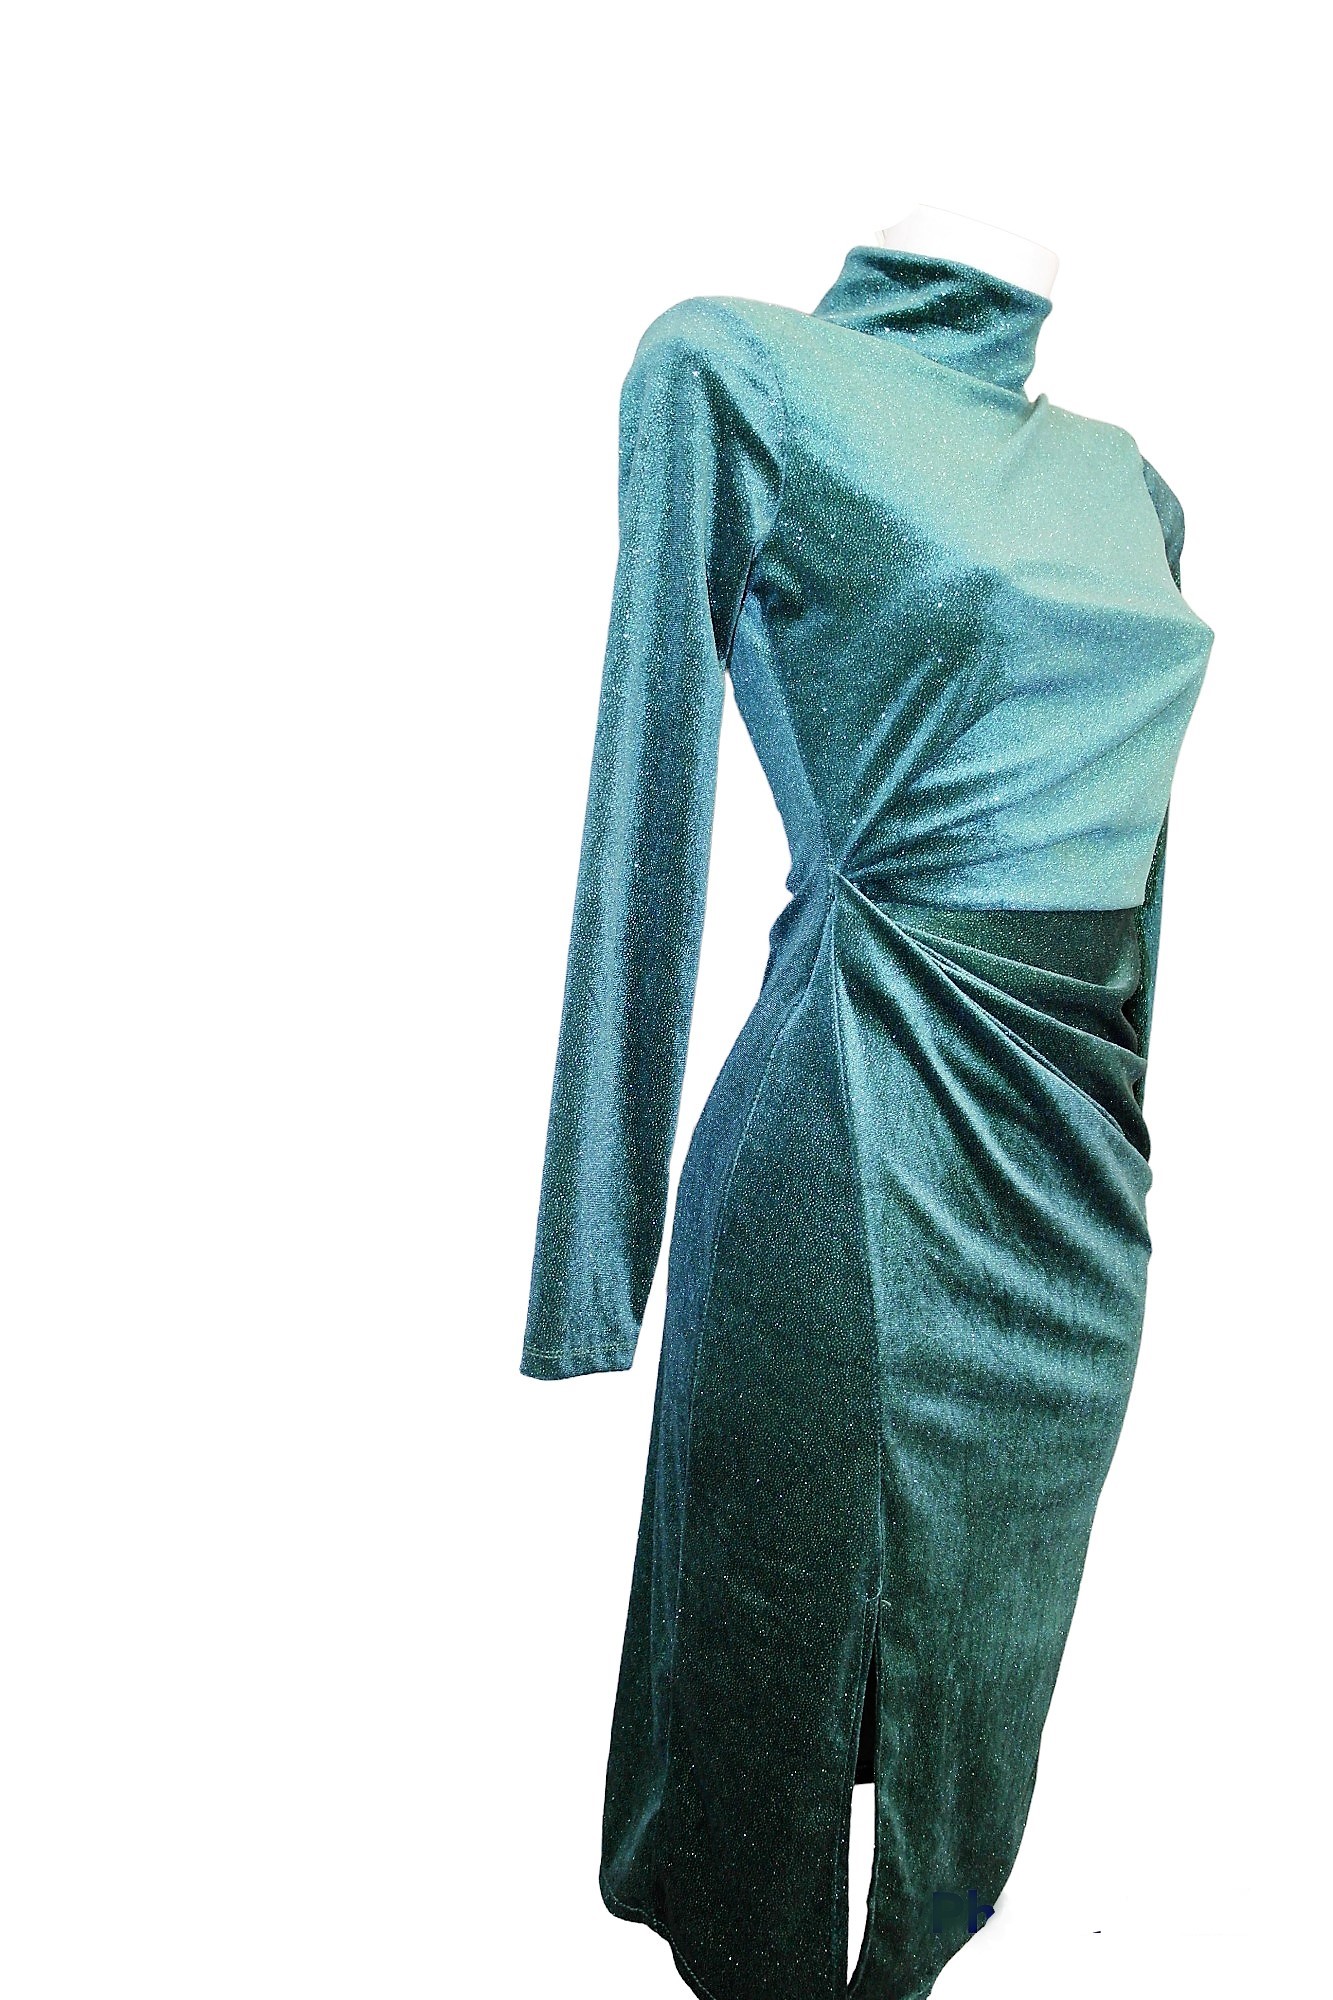 Φόρεμα βελούδινο μίντι Ζιβάγκο Νταπέ Πρασινο BQA2203